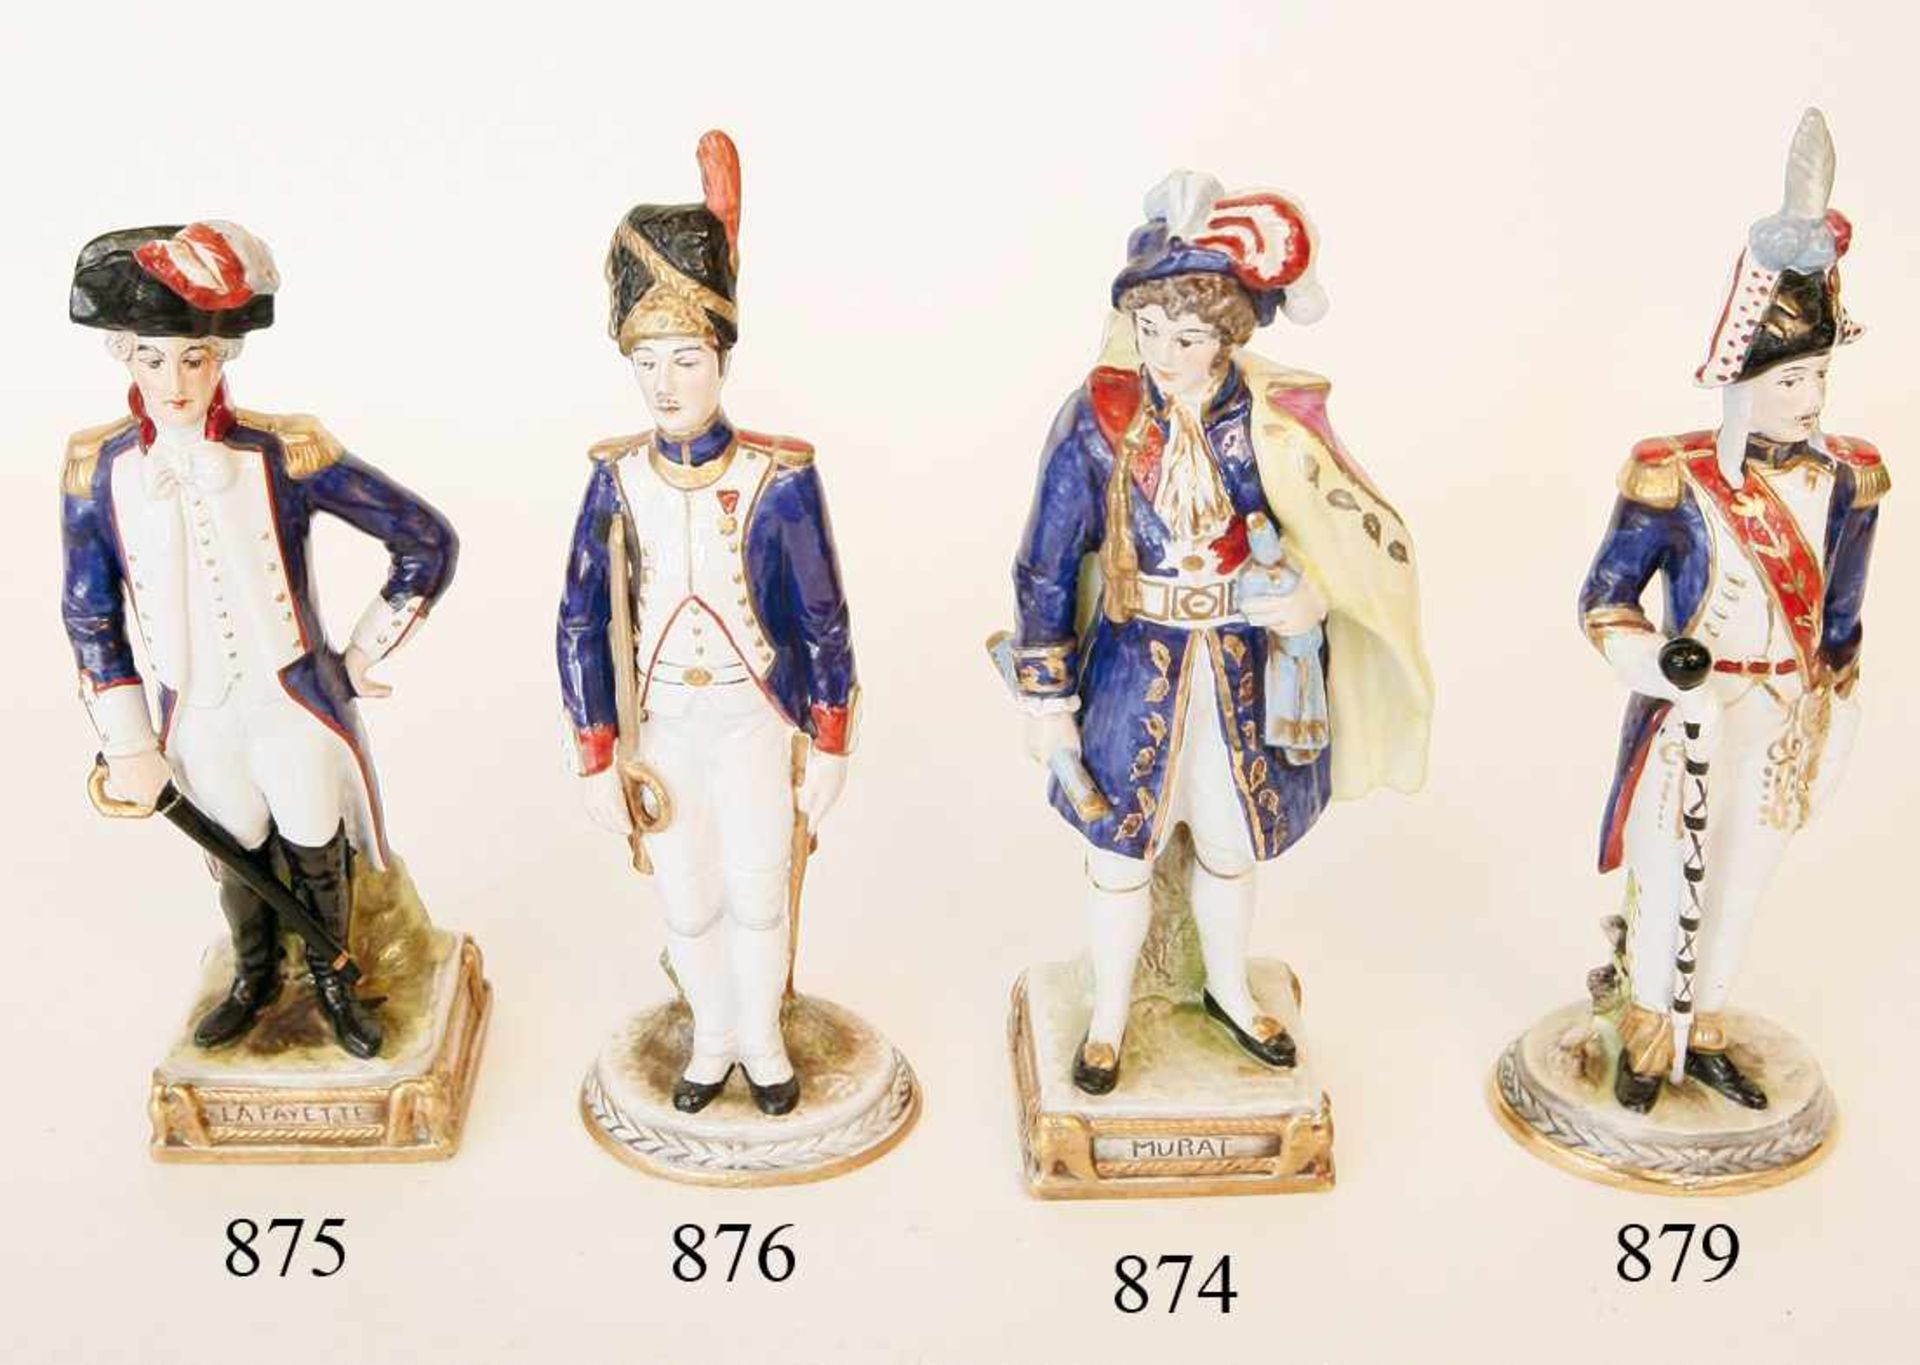 Porzellanfigur General Lafayette